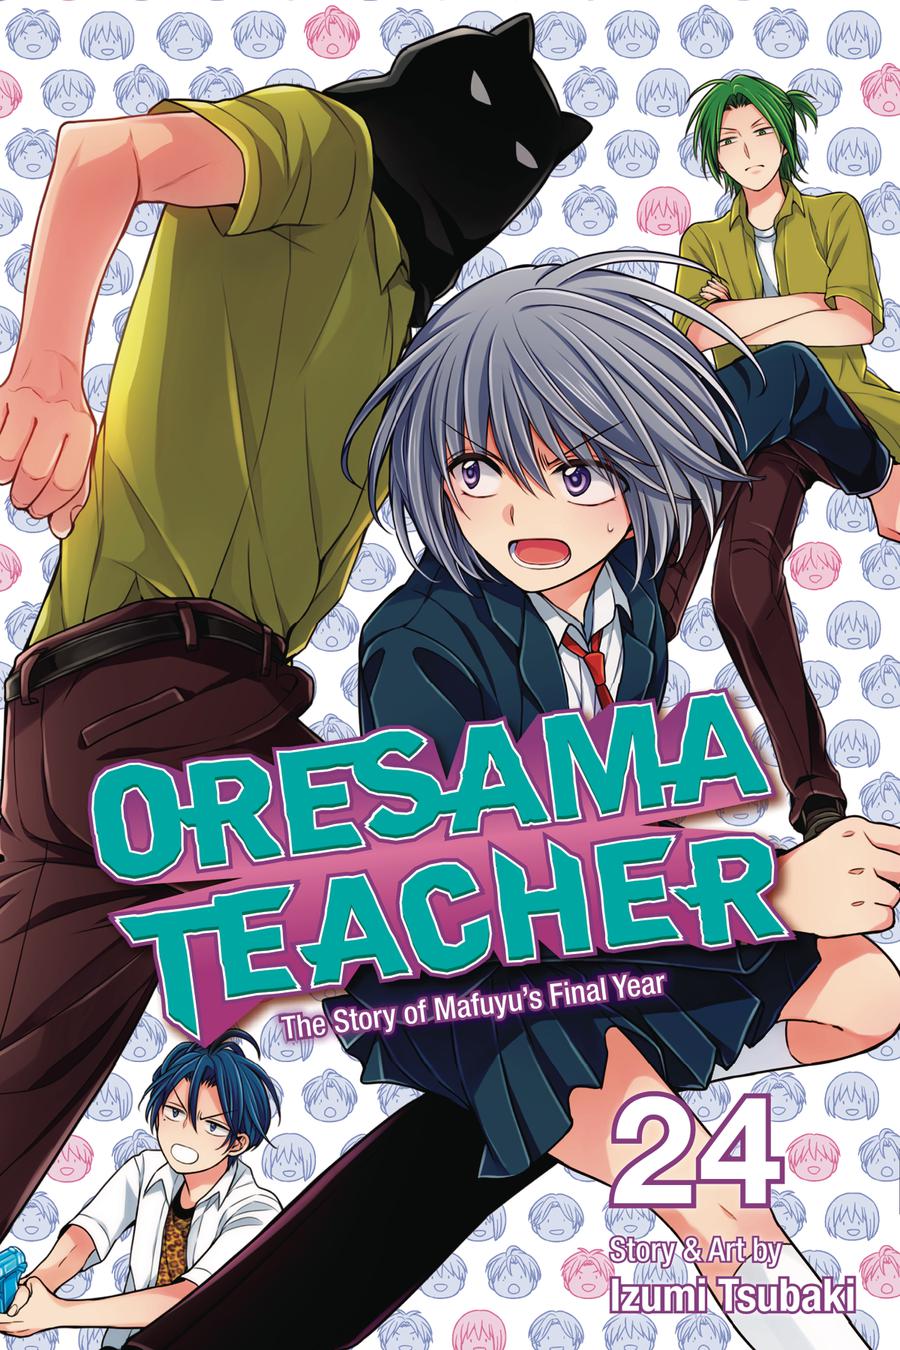 Oresama Teacher Vol 24 GN